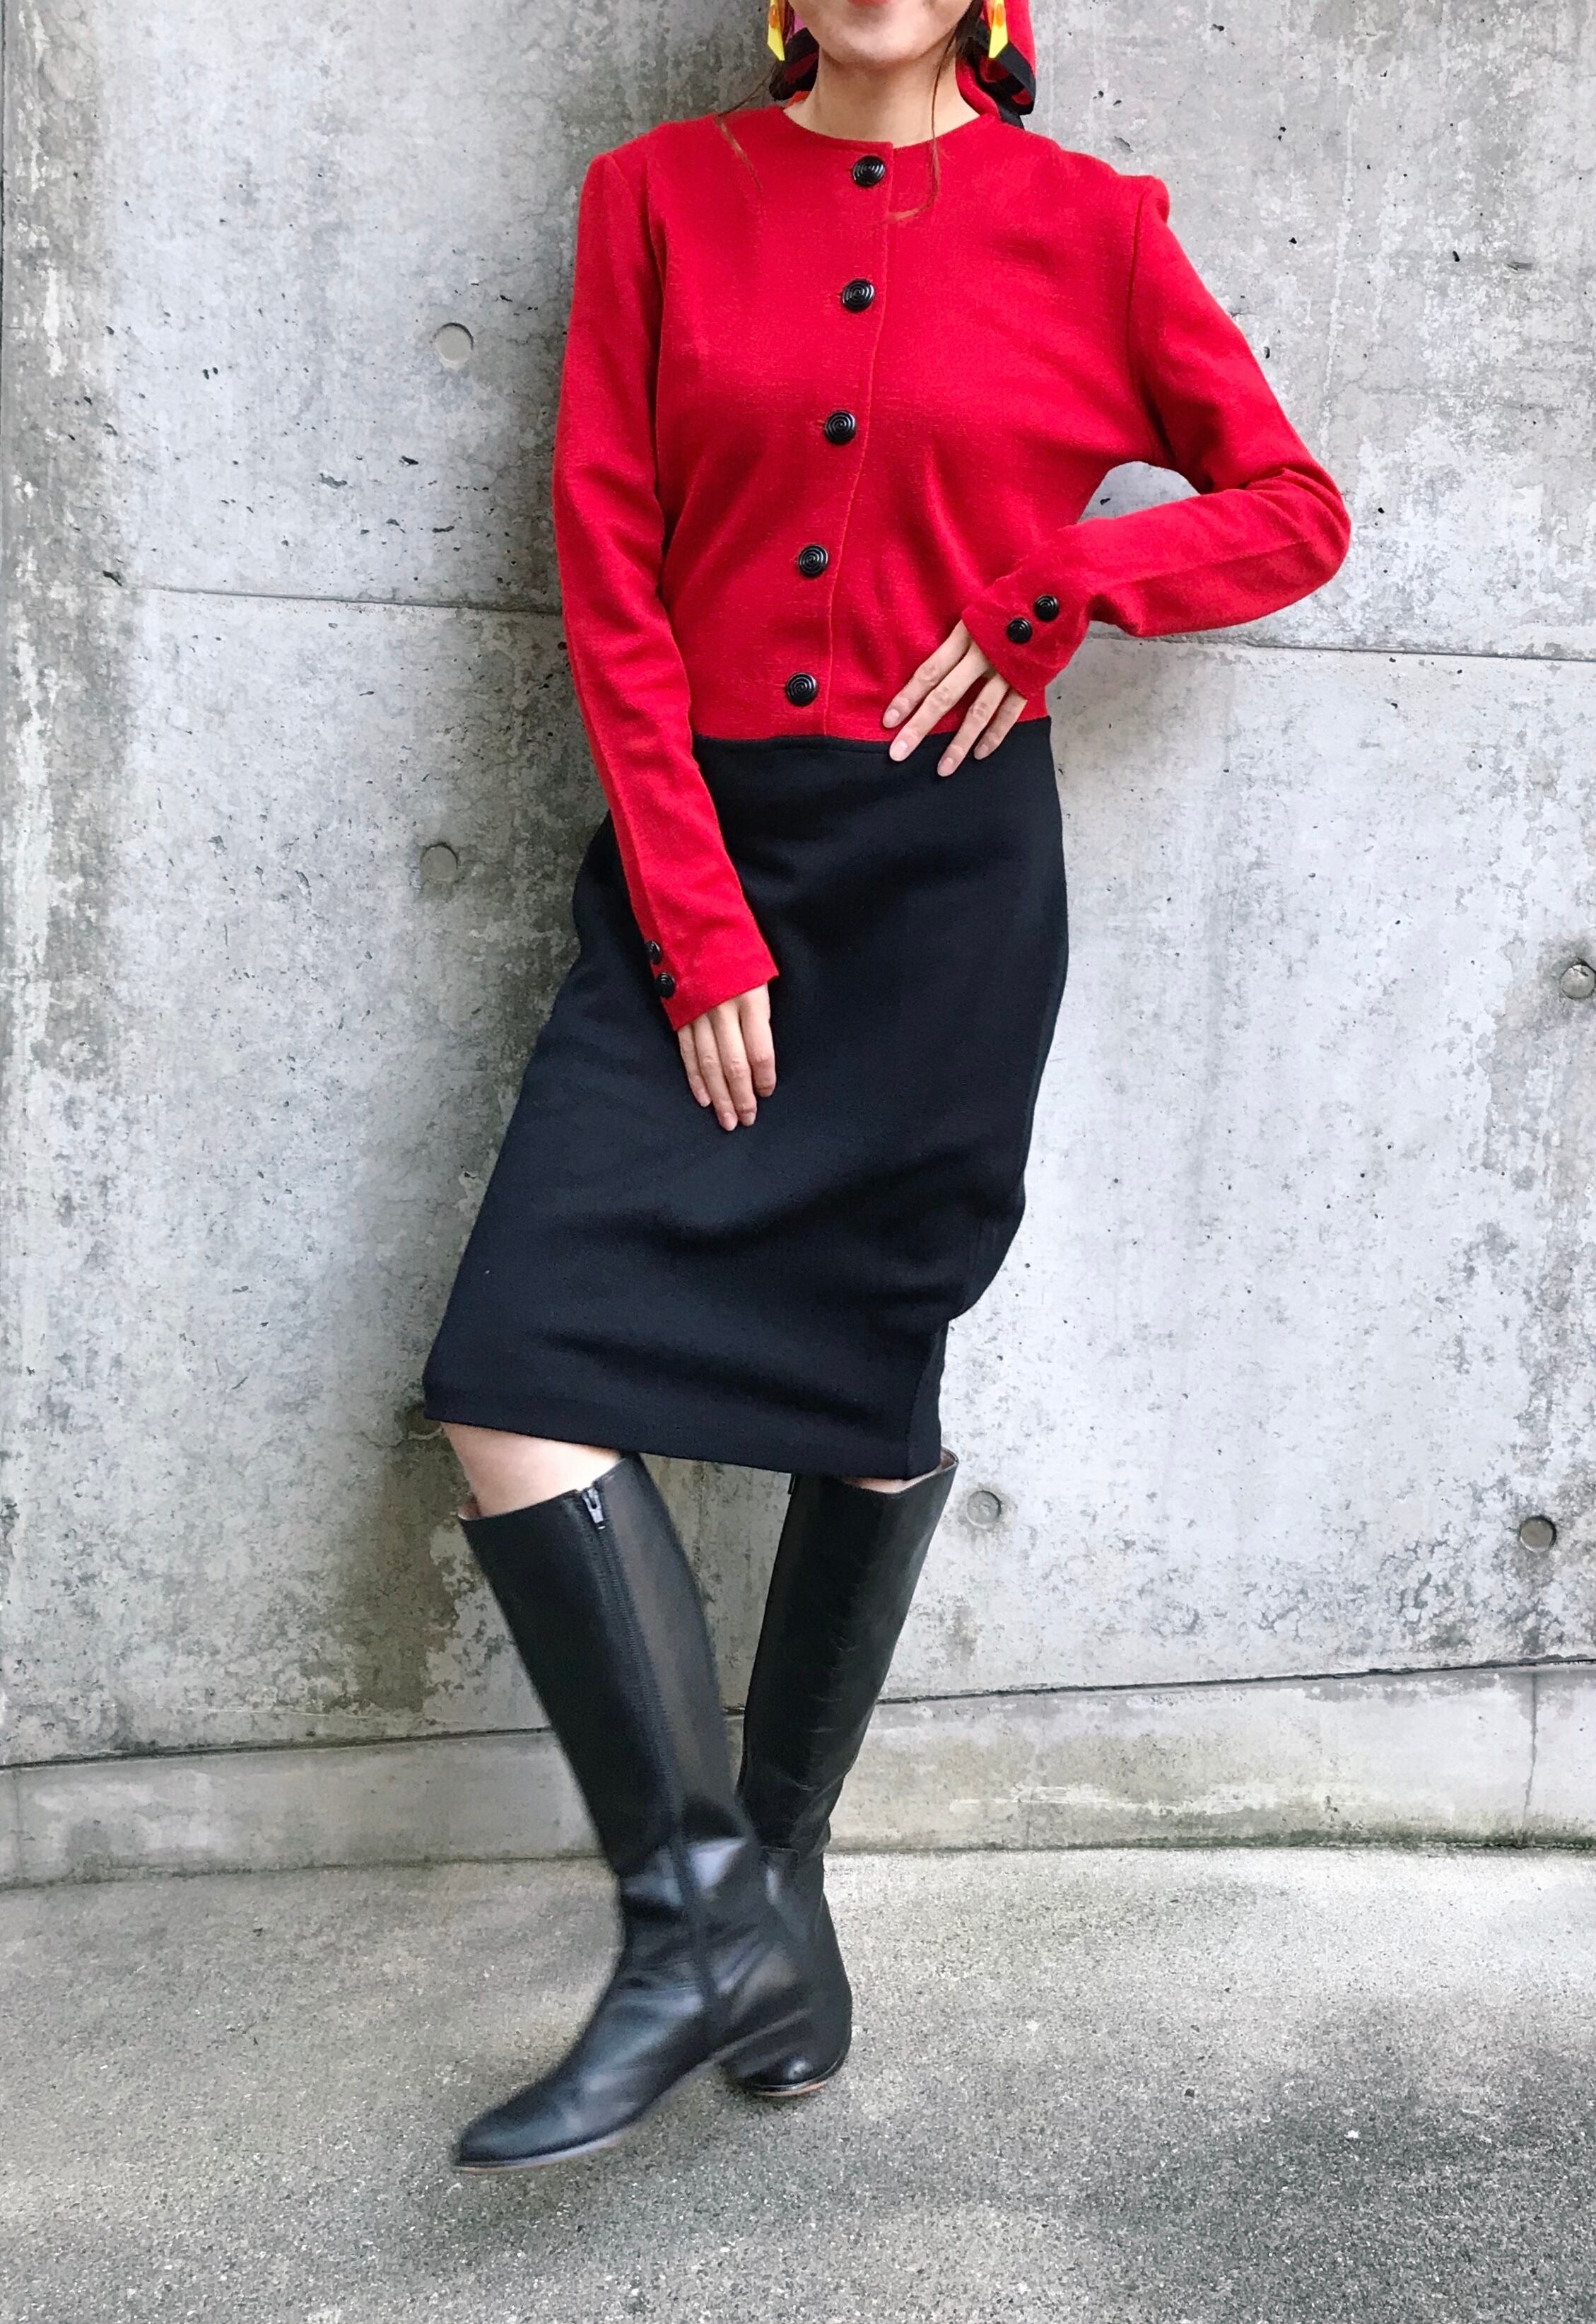 Vintage red × black bi-color knit dress (ヴィンテージ バイカラー  レッド × ブラック ニット ワンピース )